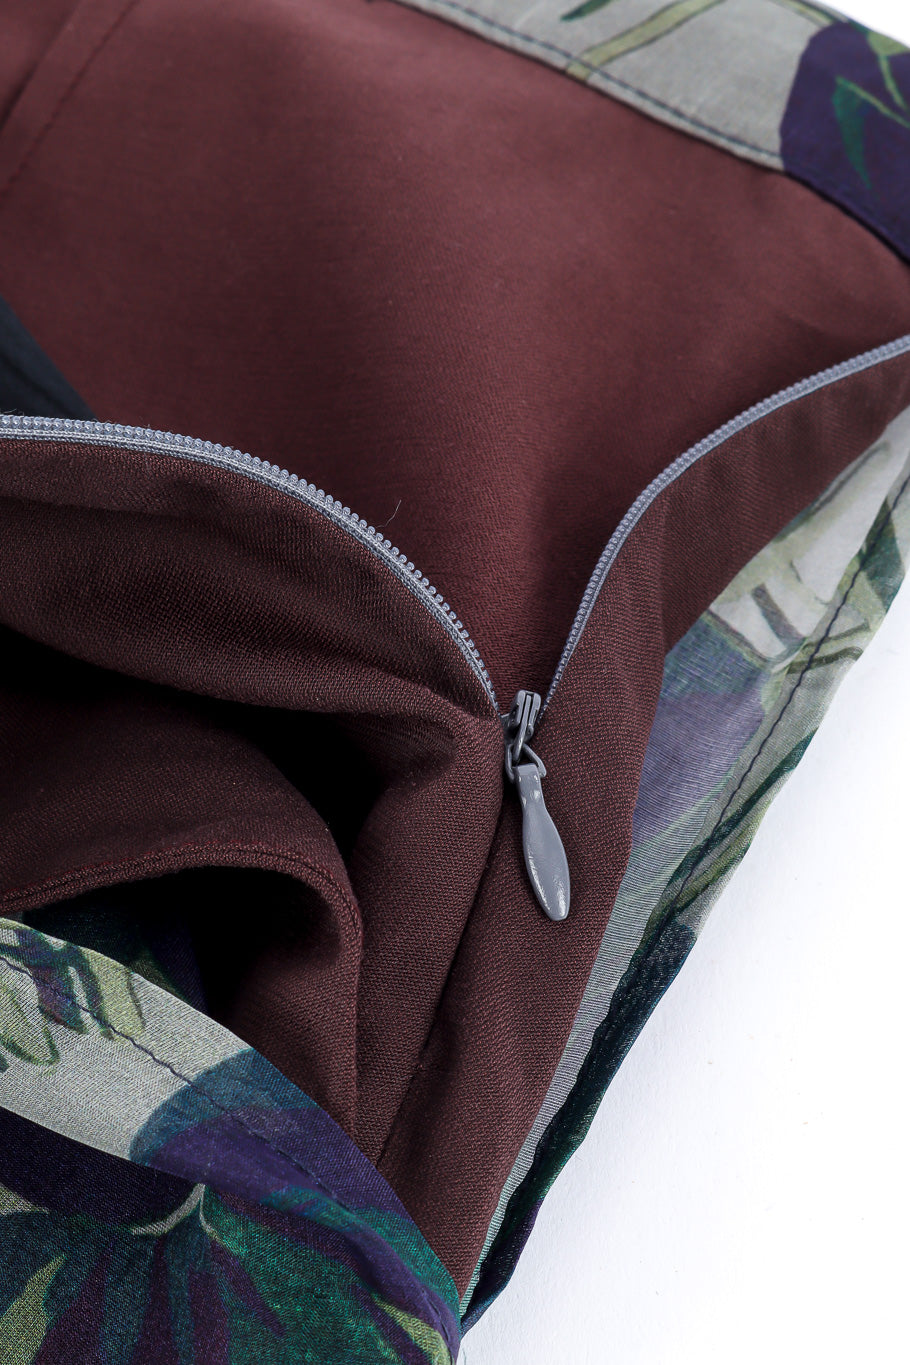 Dries Van Noten Floral Silk Lounge Pant zipper closure closeup @Recessla